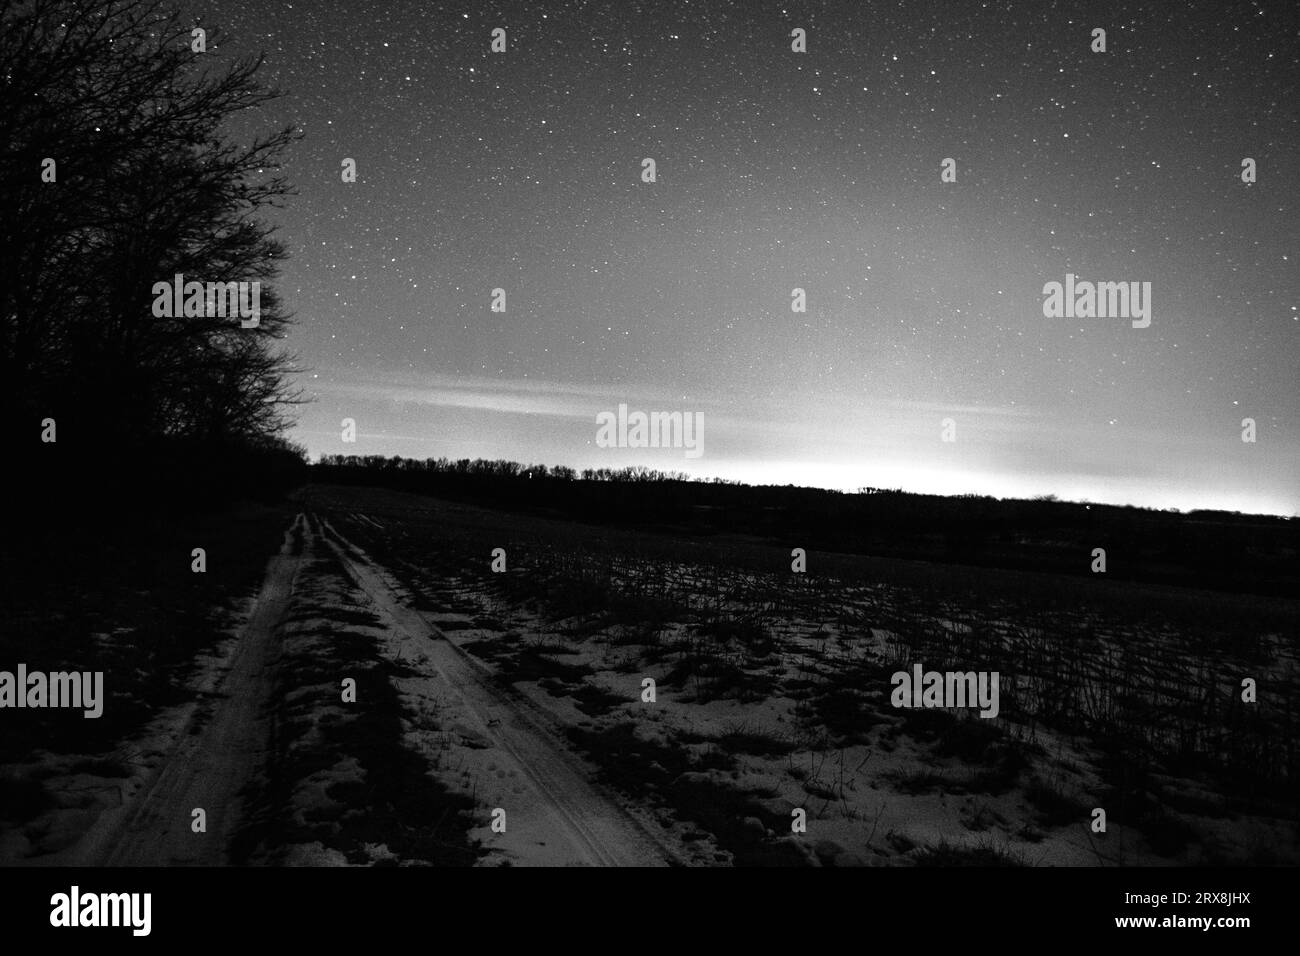 La strada tormentata conduce all'oscurità monocromatica accanto a un campo innevato sotto le stelle. Foto Stock